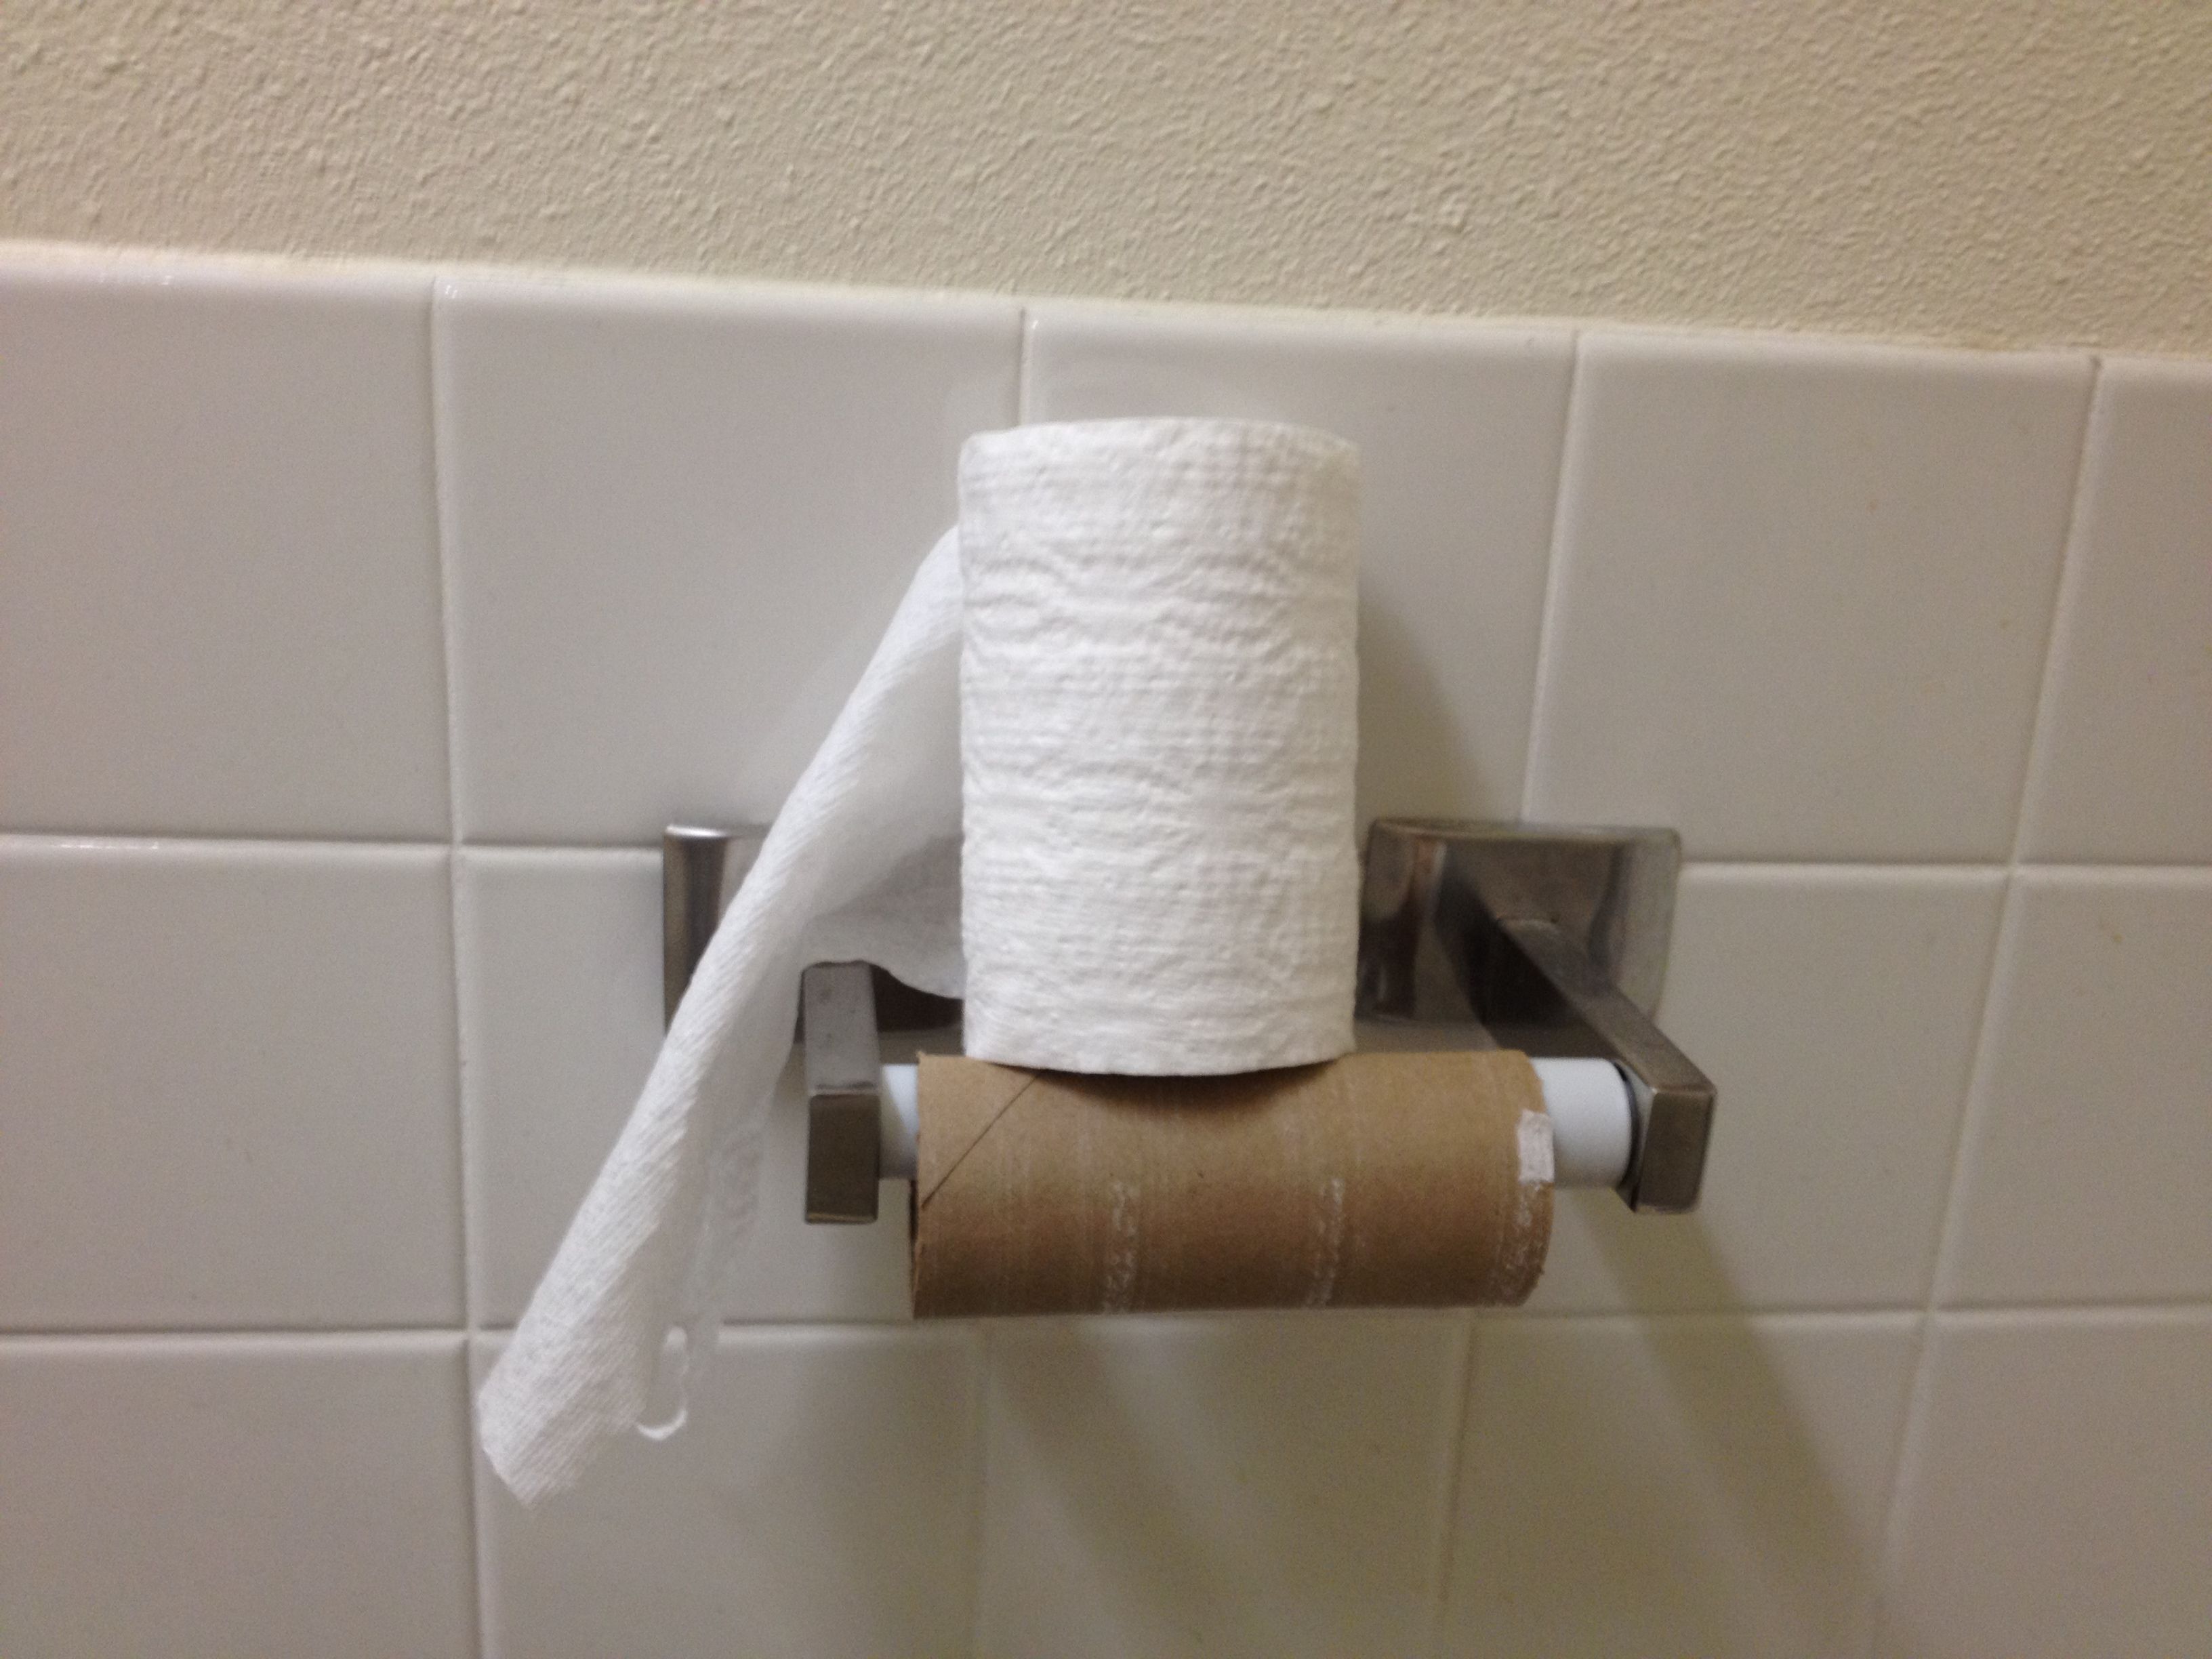 empty-toilet-paper-roll.jpg